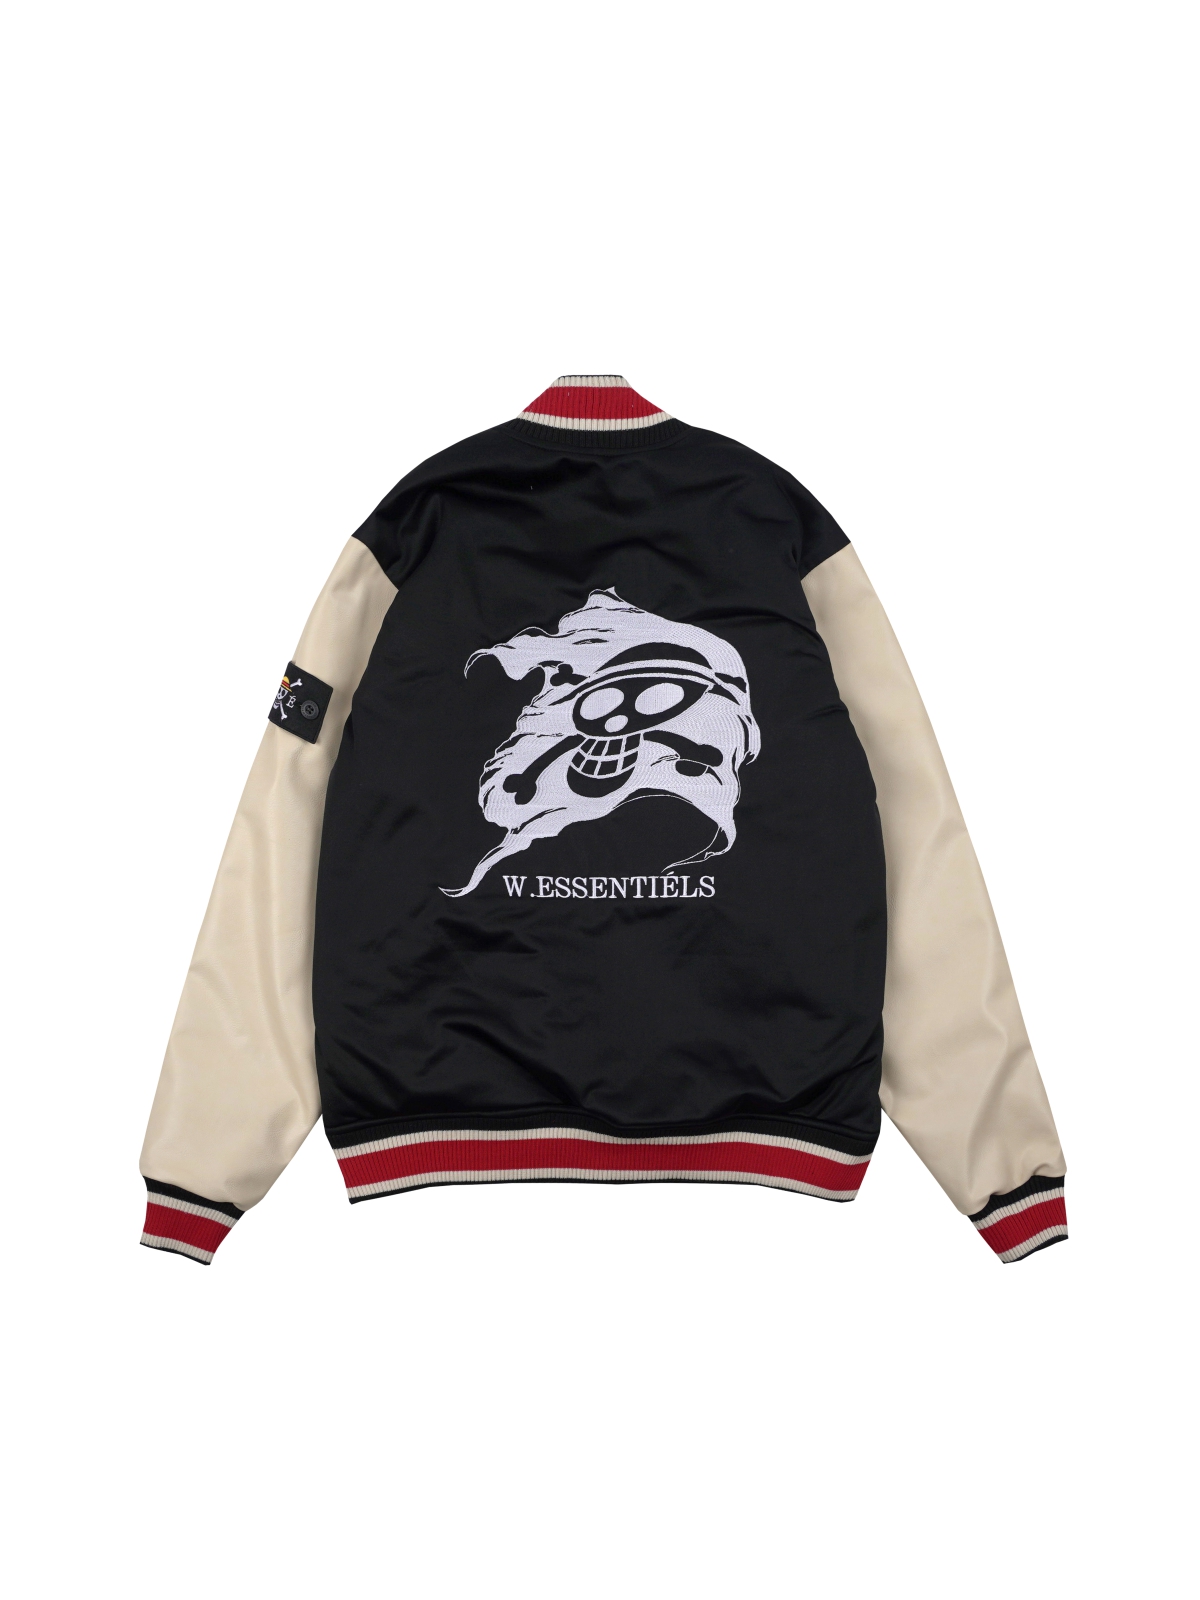 W.Essentiéls x One Piece Mugiwara Flag Collegiate Varsity Jacket Noir ...